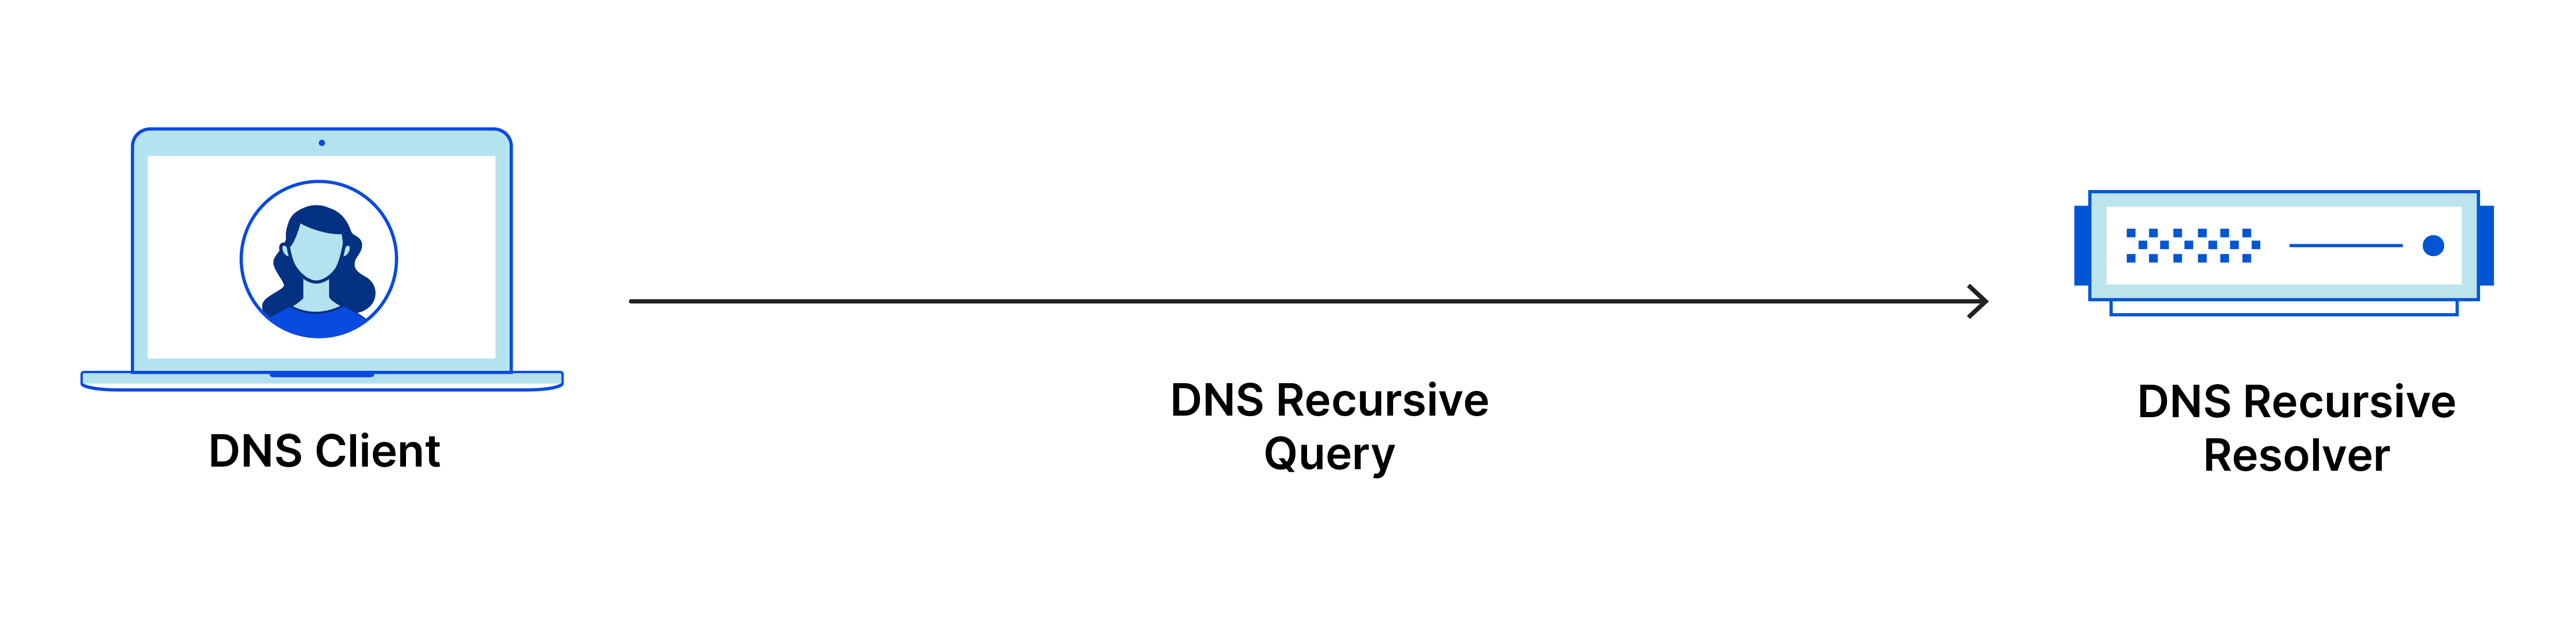 La consulta DNS recursiva va del cliente DNS al solucionador recursivo de DNS